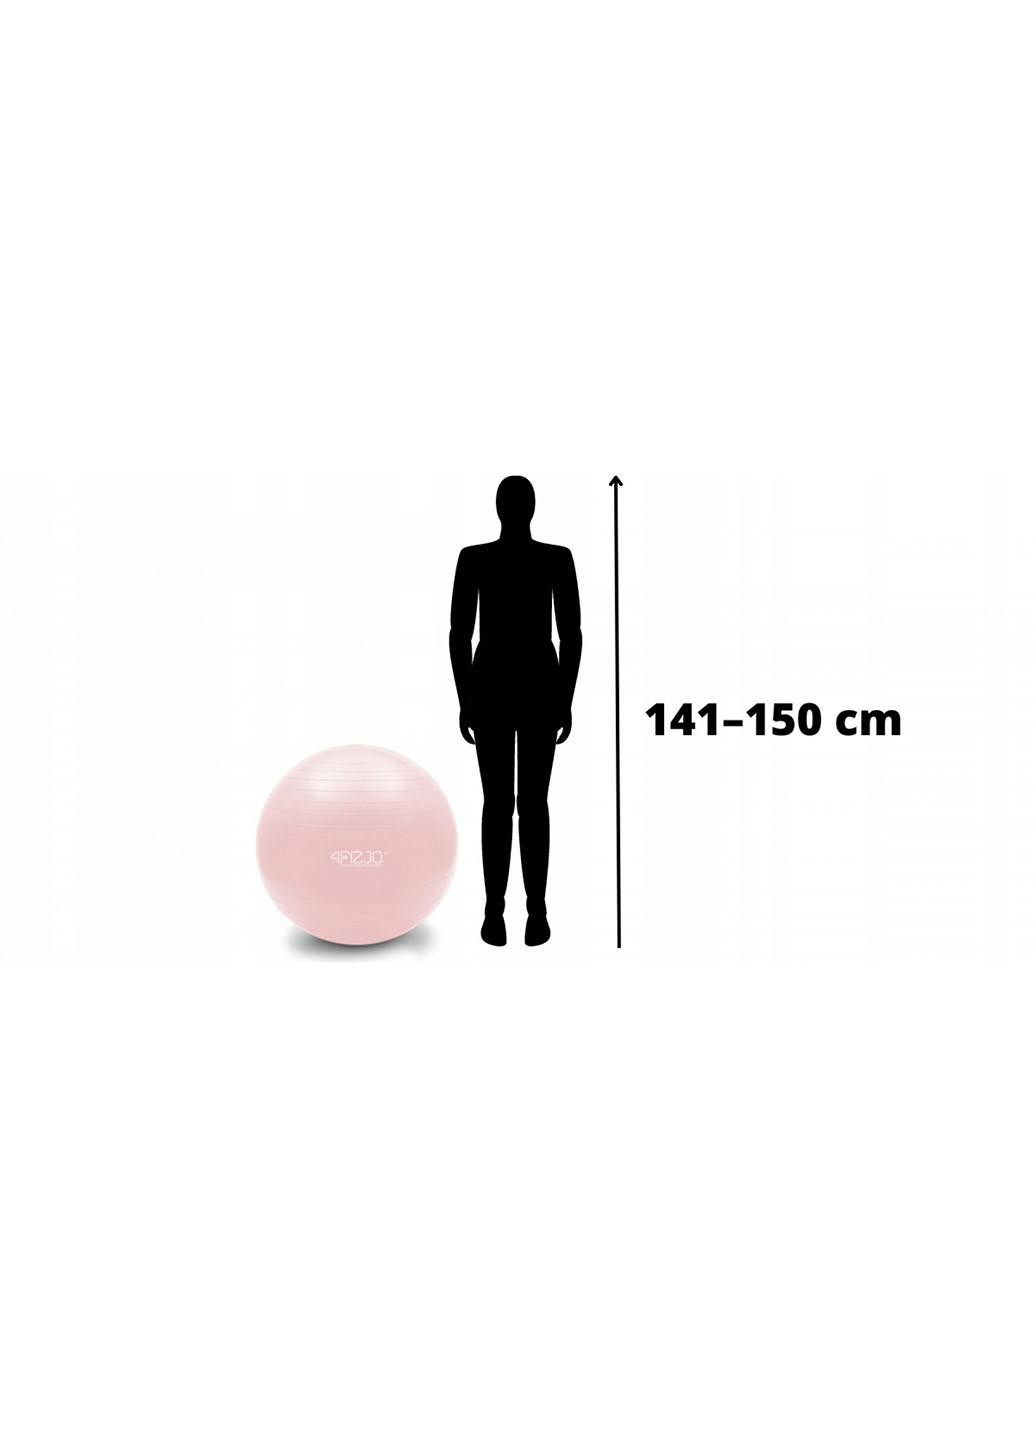 Мяч для фитнеса (фитбол) 55 см Anti-Burst 4FJ0398 Pink 4FIZJO (259567465)